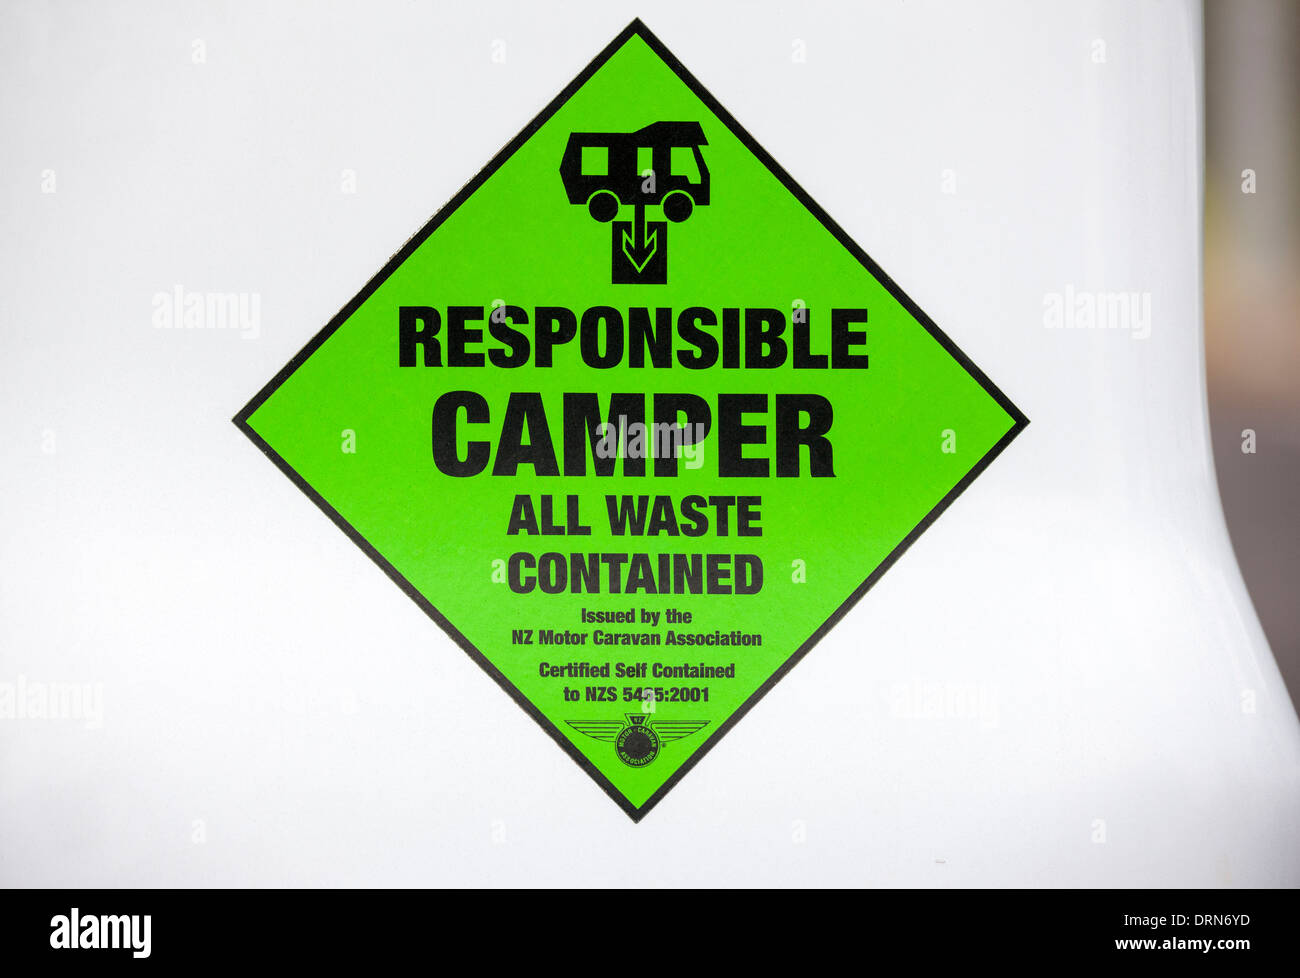 Zertifizierte selbst enthaltenen Aufkleber auf einem Wohnmobil Camper van Wohnmobil Reisemobil. Neuseeland-Zertifizierung für freies Campen. Stockfoto